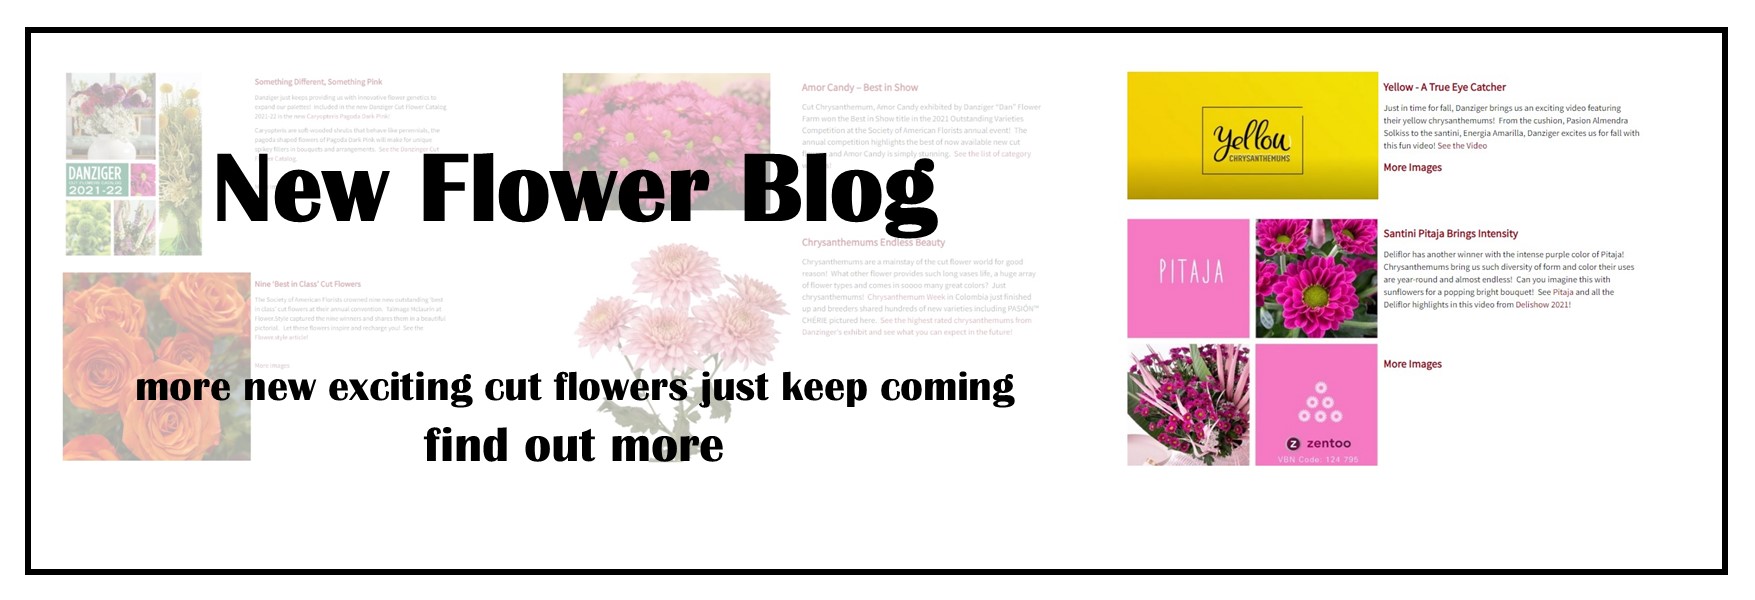 New Flower Blog